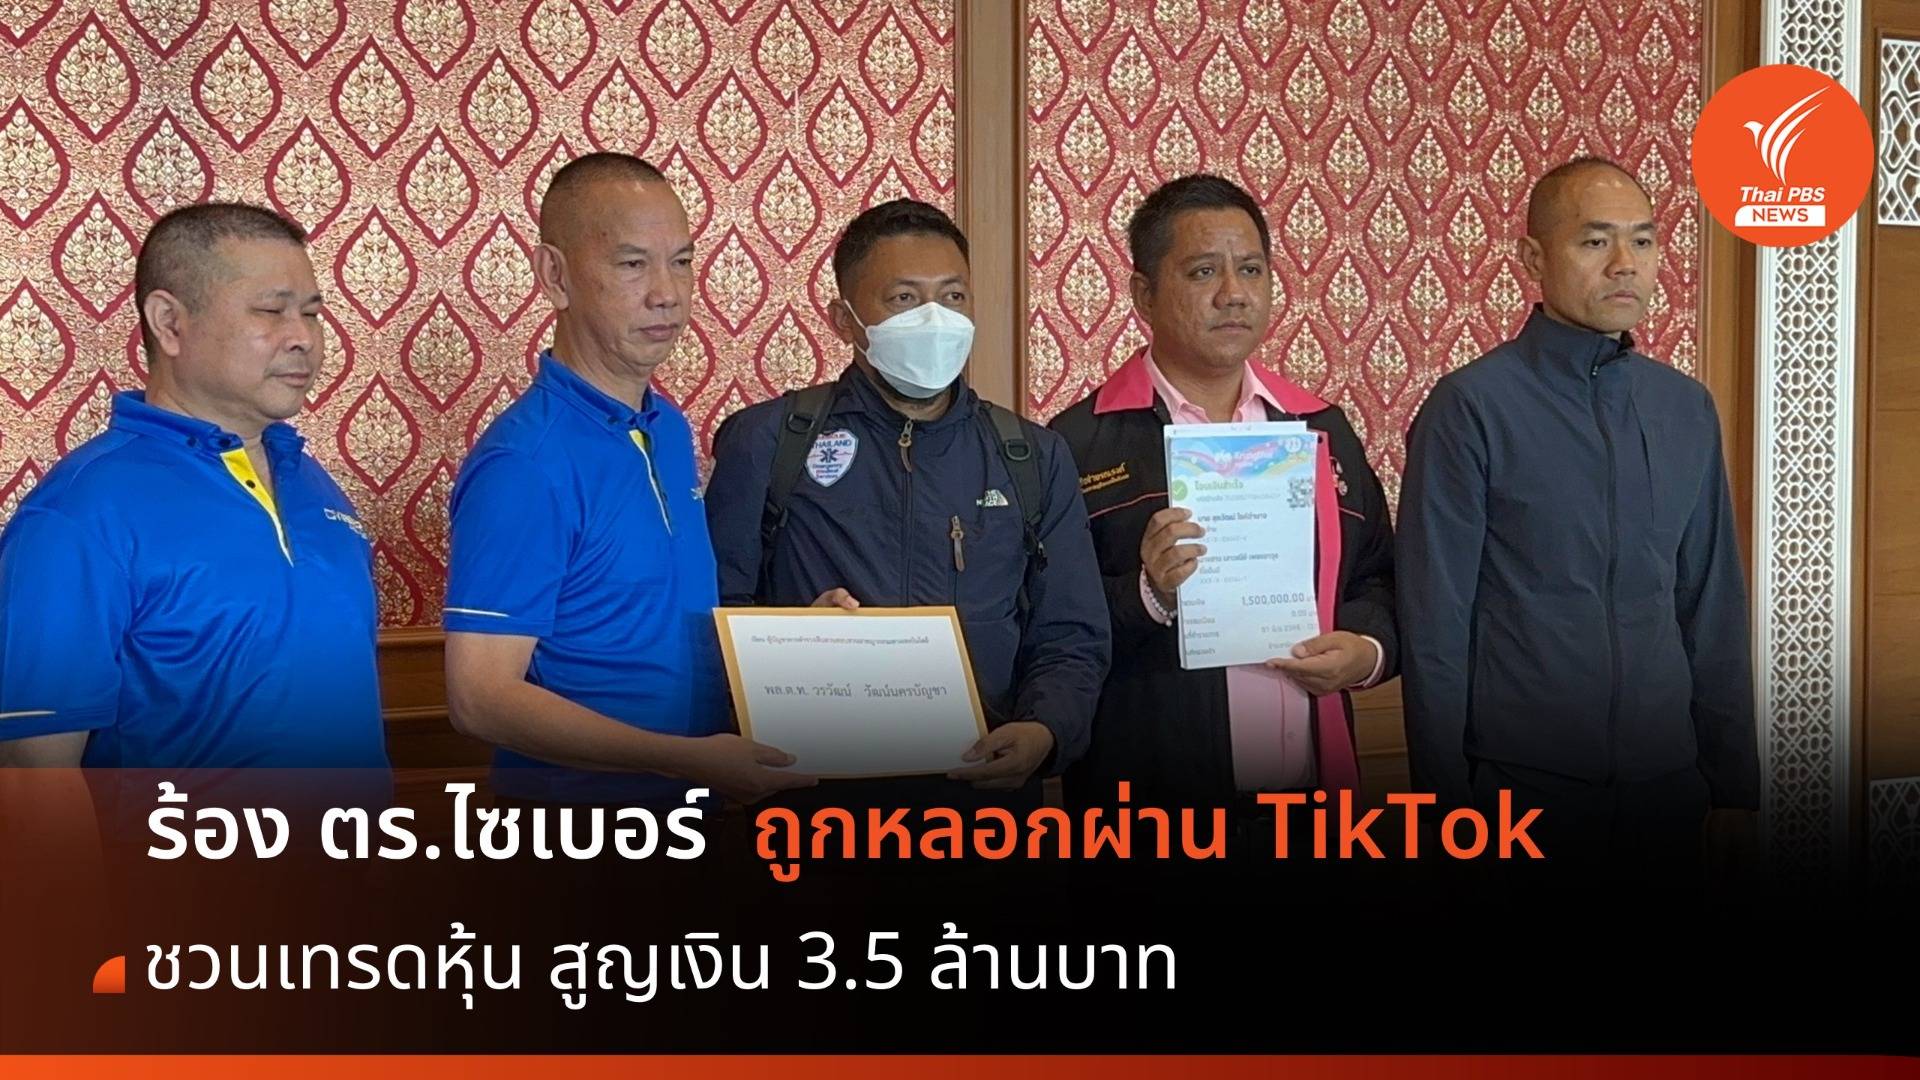 หนุ่มถูกหลอกผ่าน TikTok ชวนเทรดหุ้น สูญเงิน 3.5 ล้านบาท